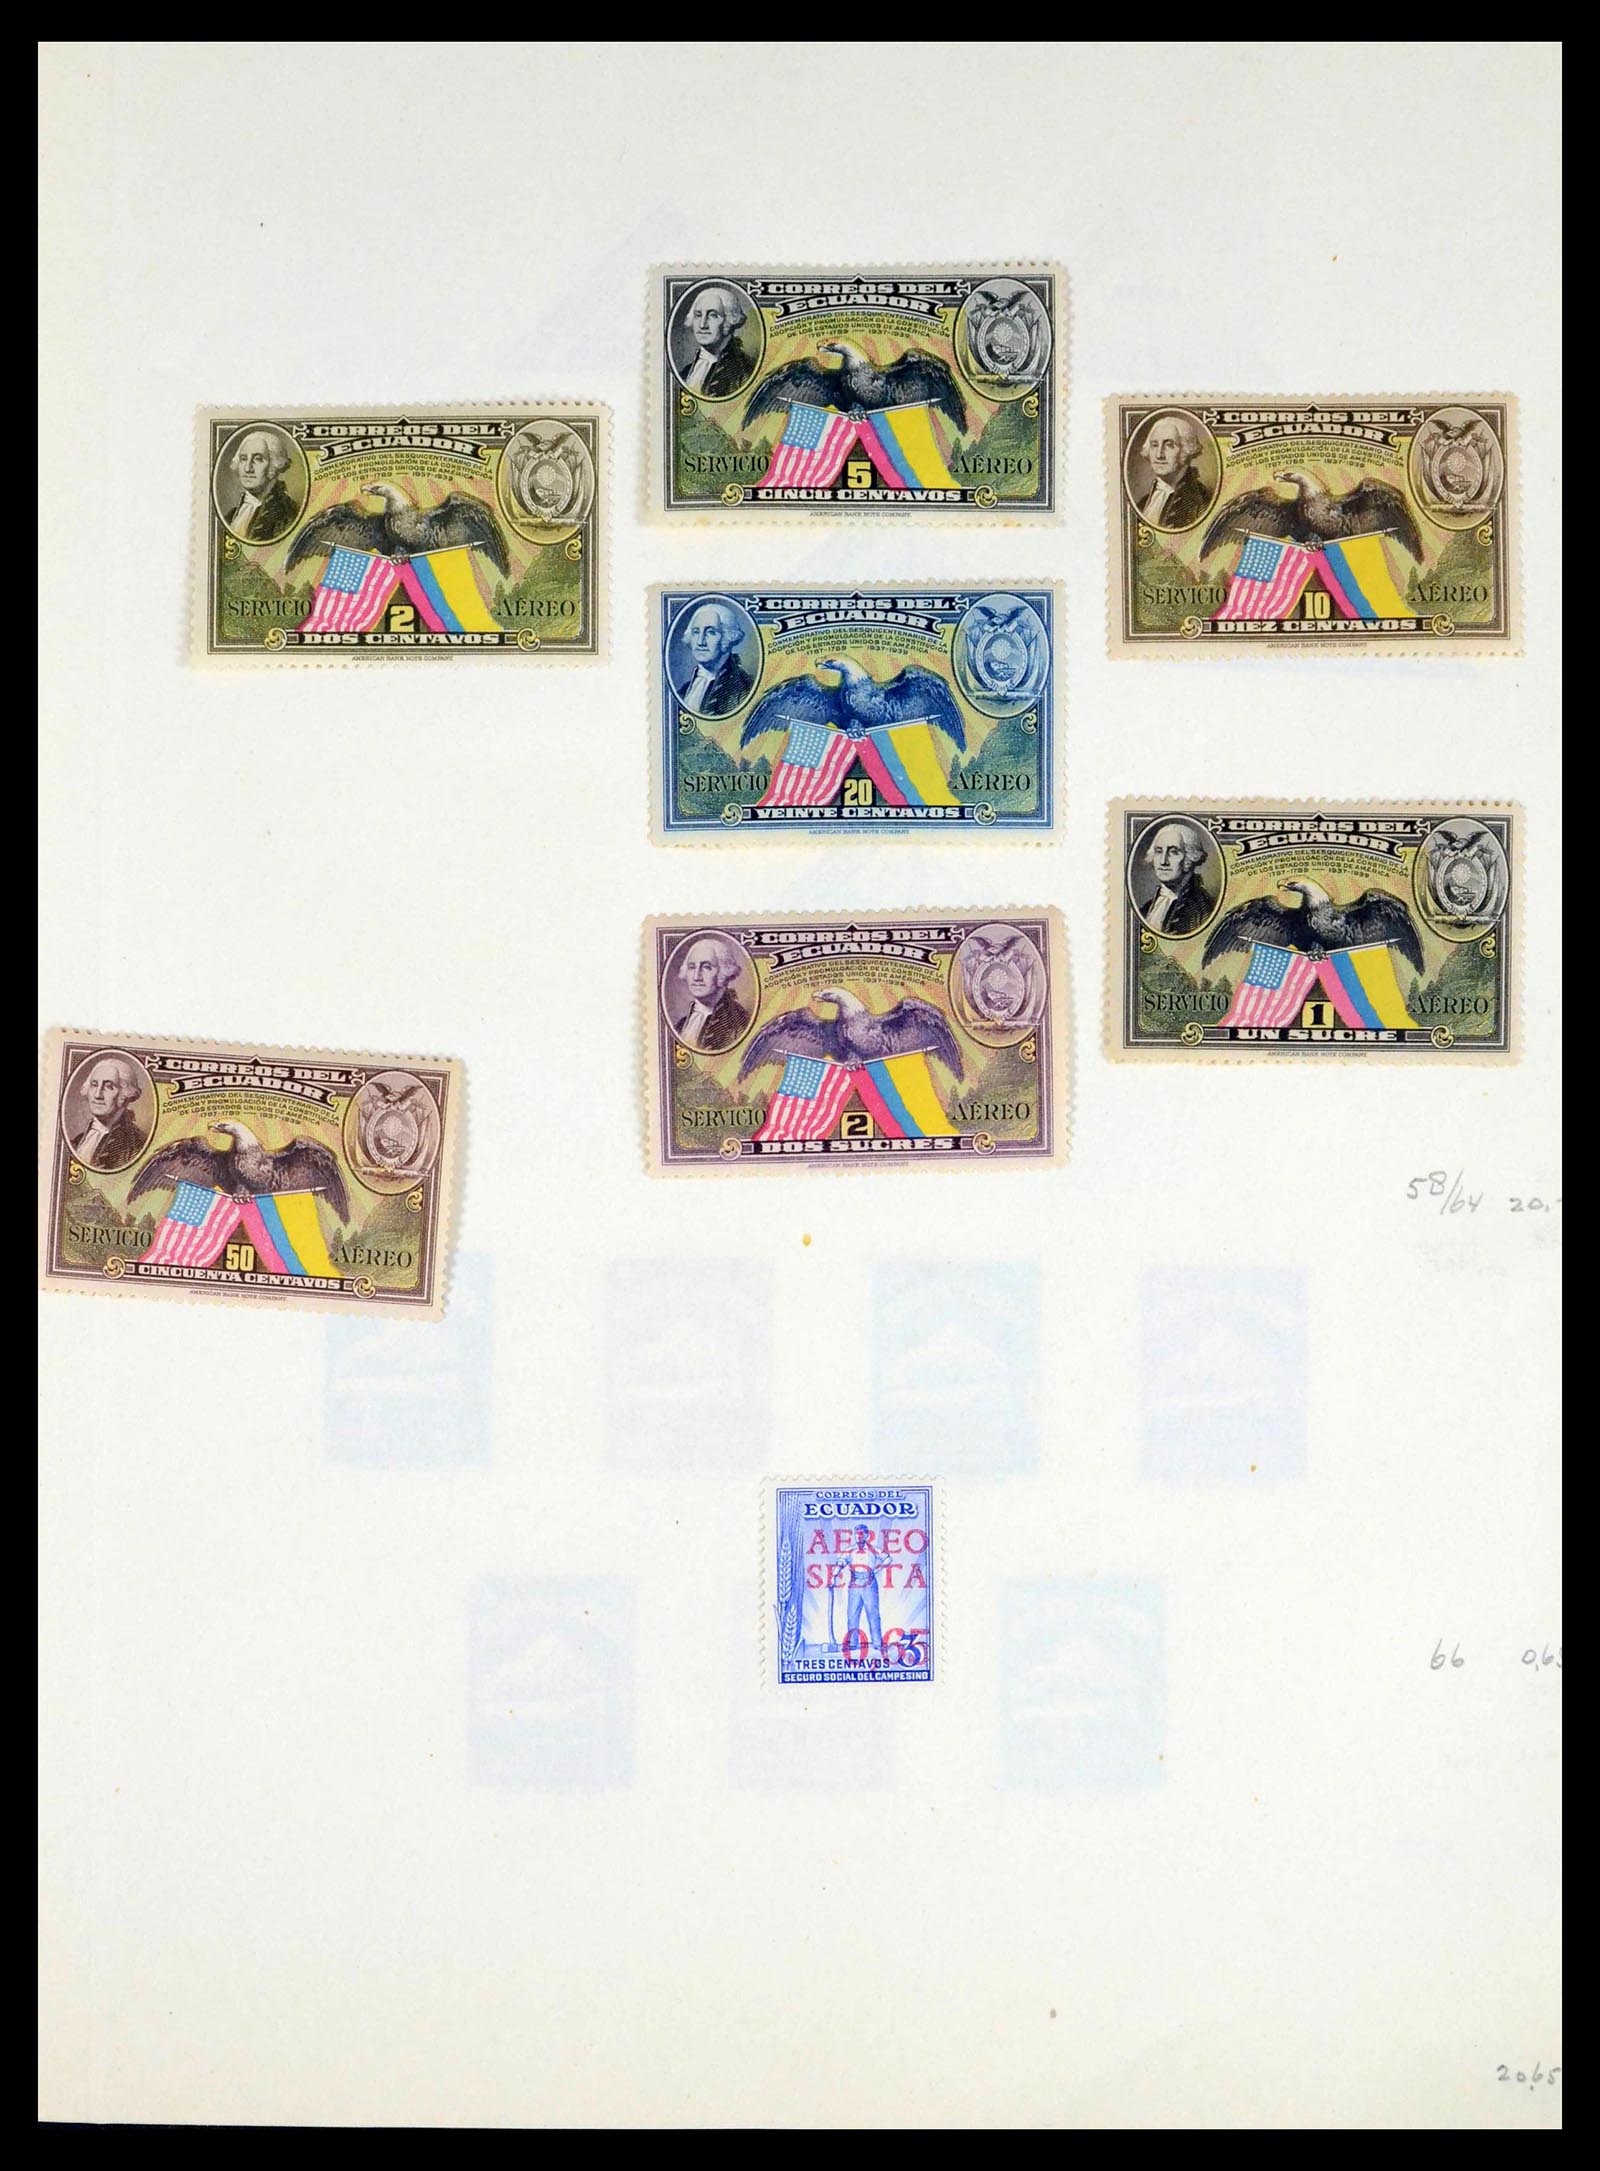 39456 0005 - Stamp collection 39456 Ecuador 1865-1960.